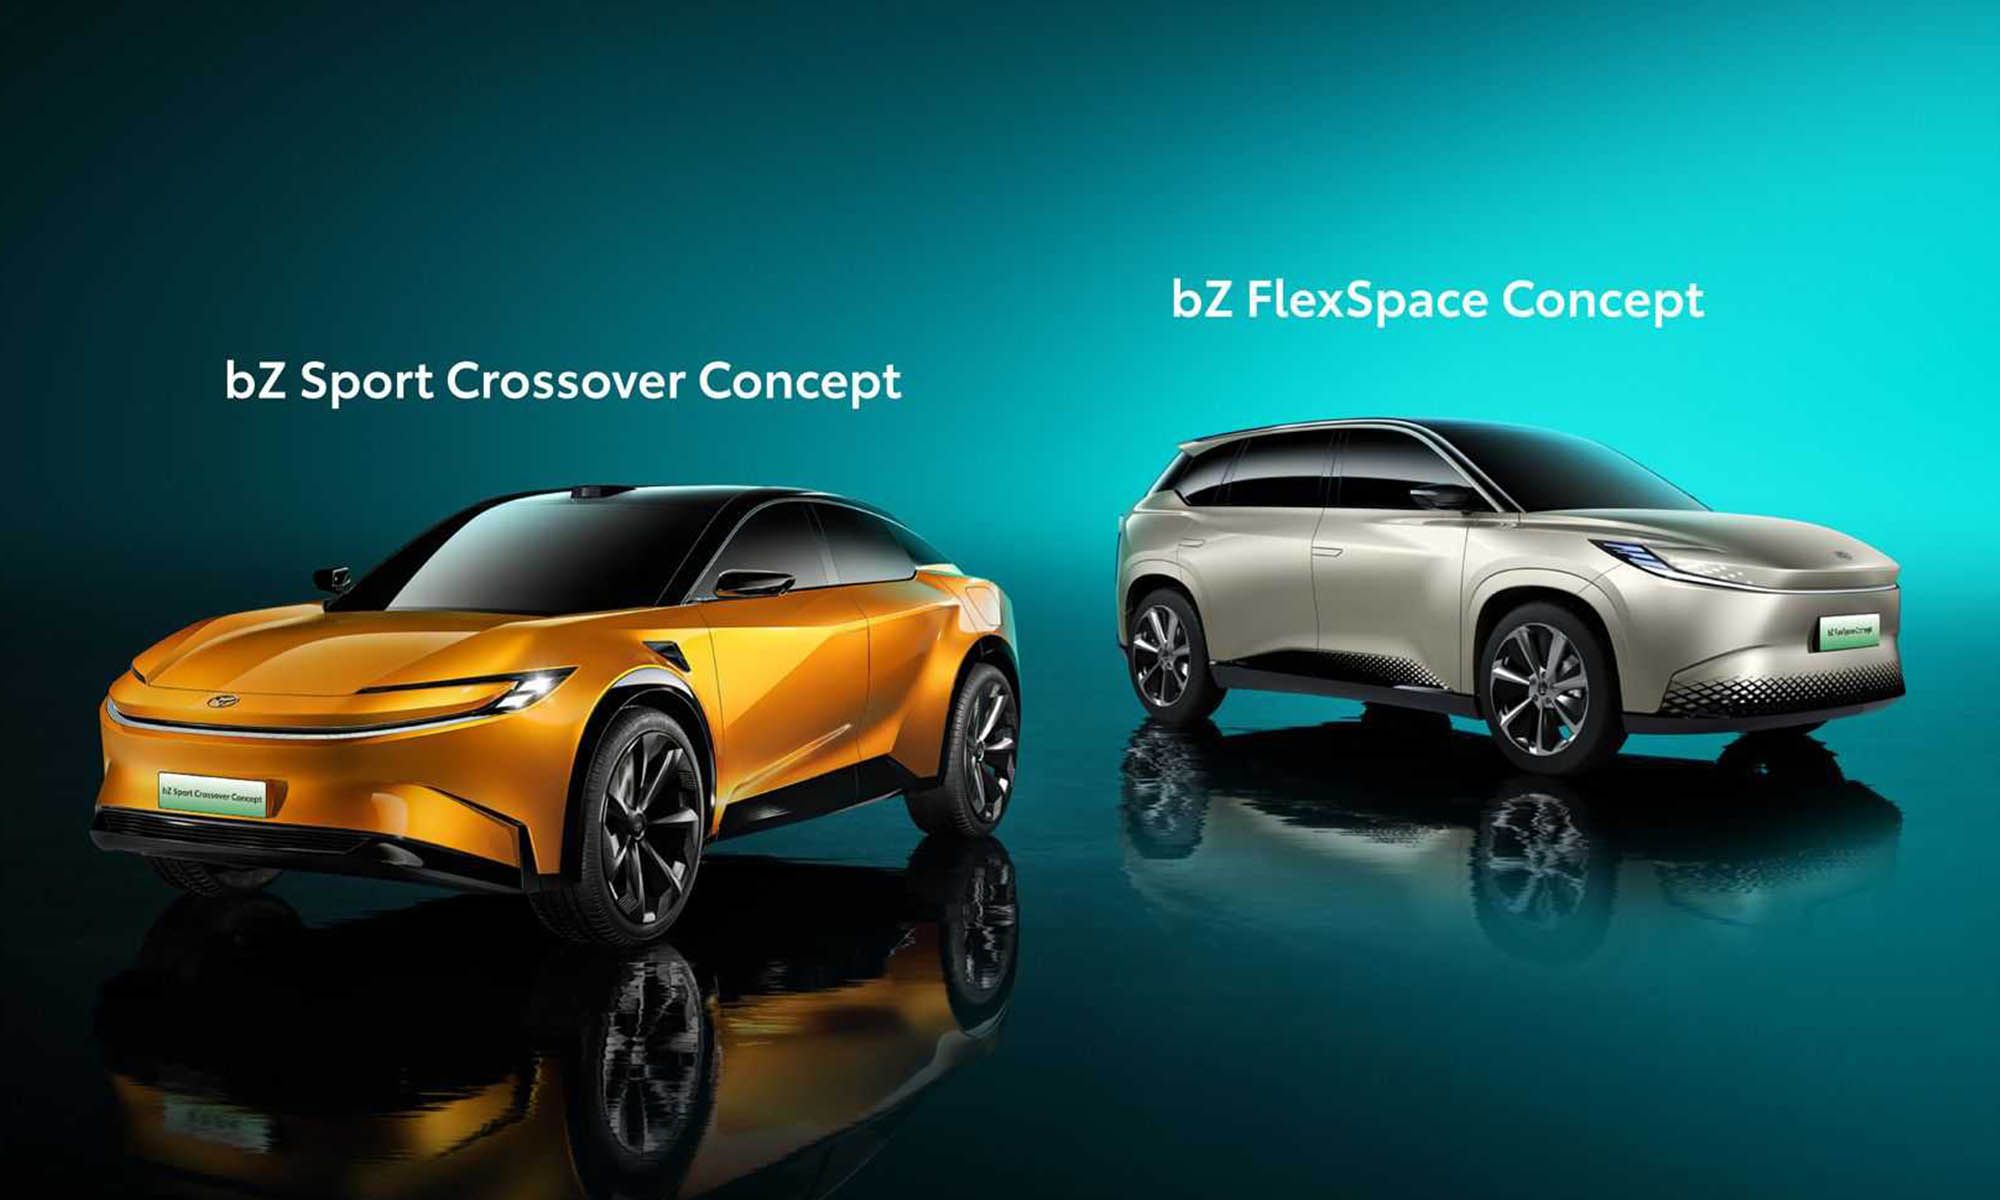 El bzSport Crossover Concept y el bZ FlexSpace Concept, presentados en Shanghái, están destinados a públicos completamente diferentes.